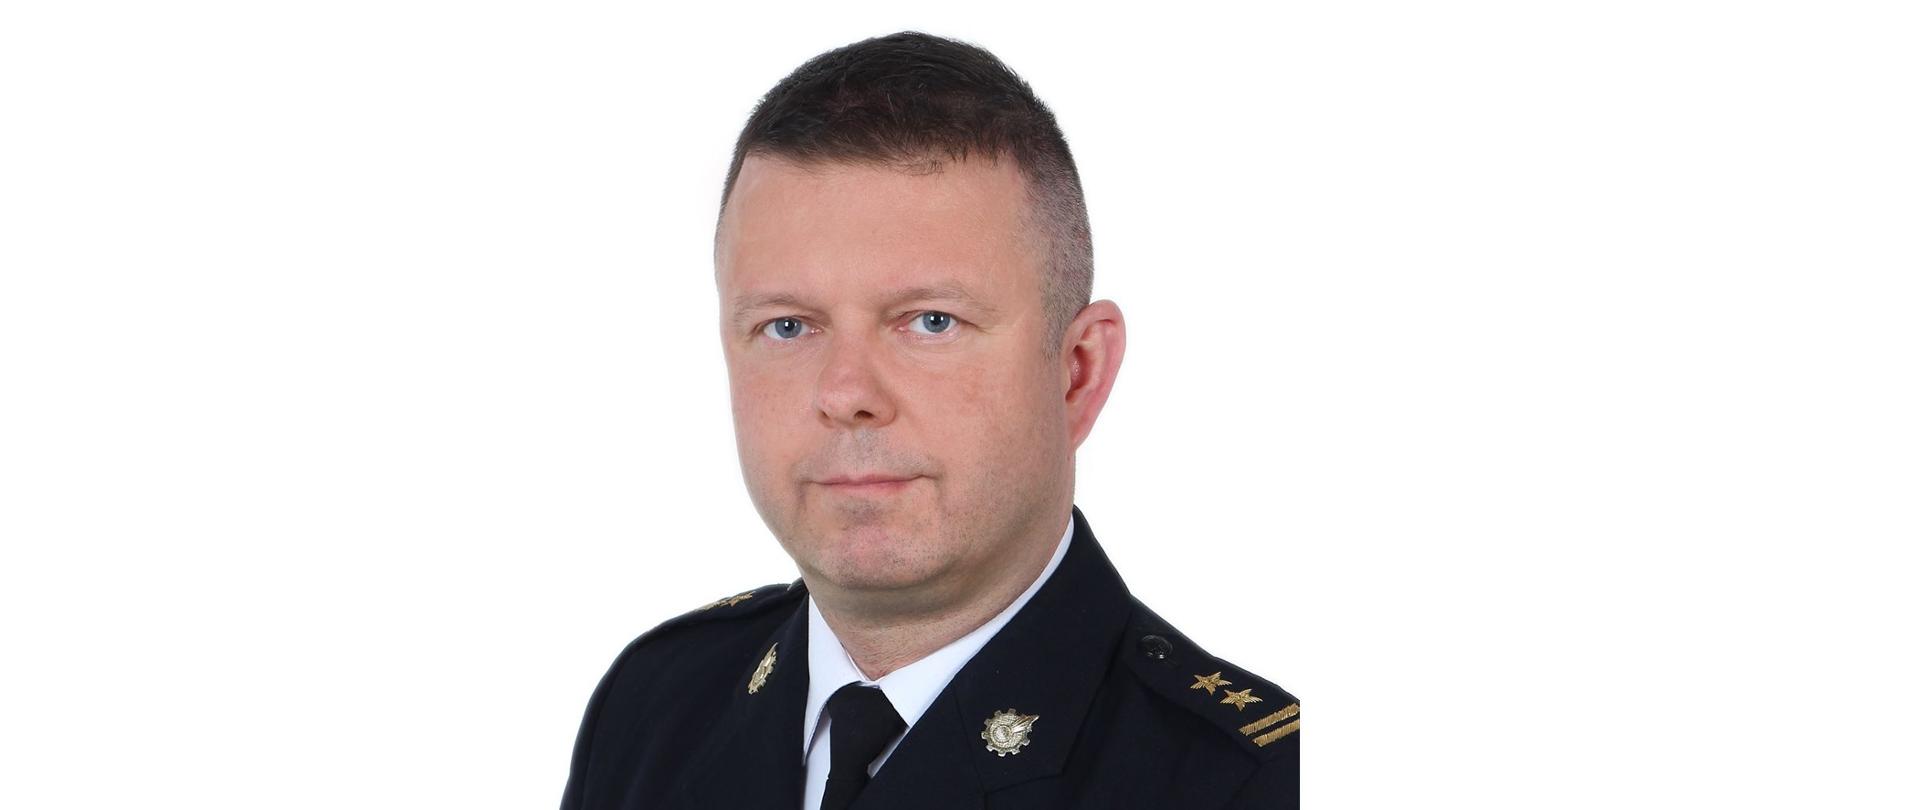 Zdjęcie profilowe bryg. Adama Kalinowskiego w mundurze wyjściowym